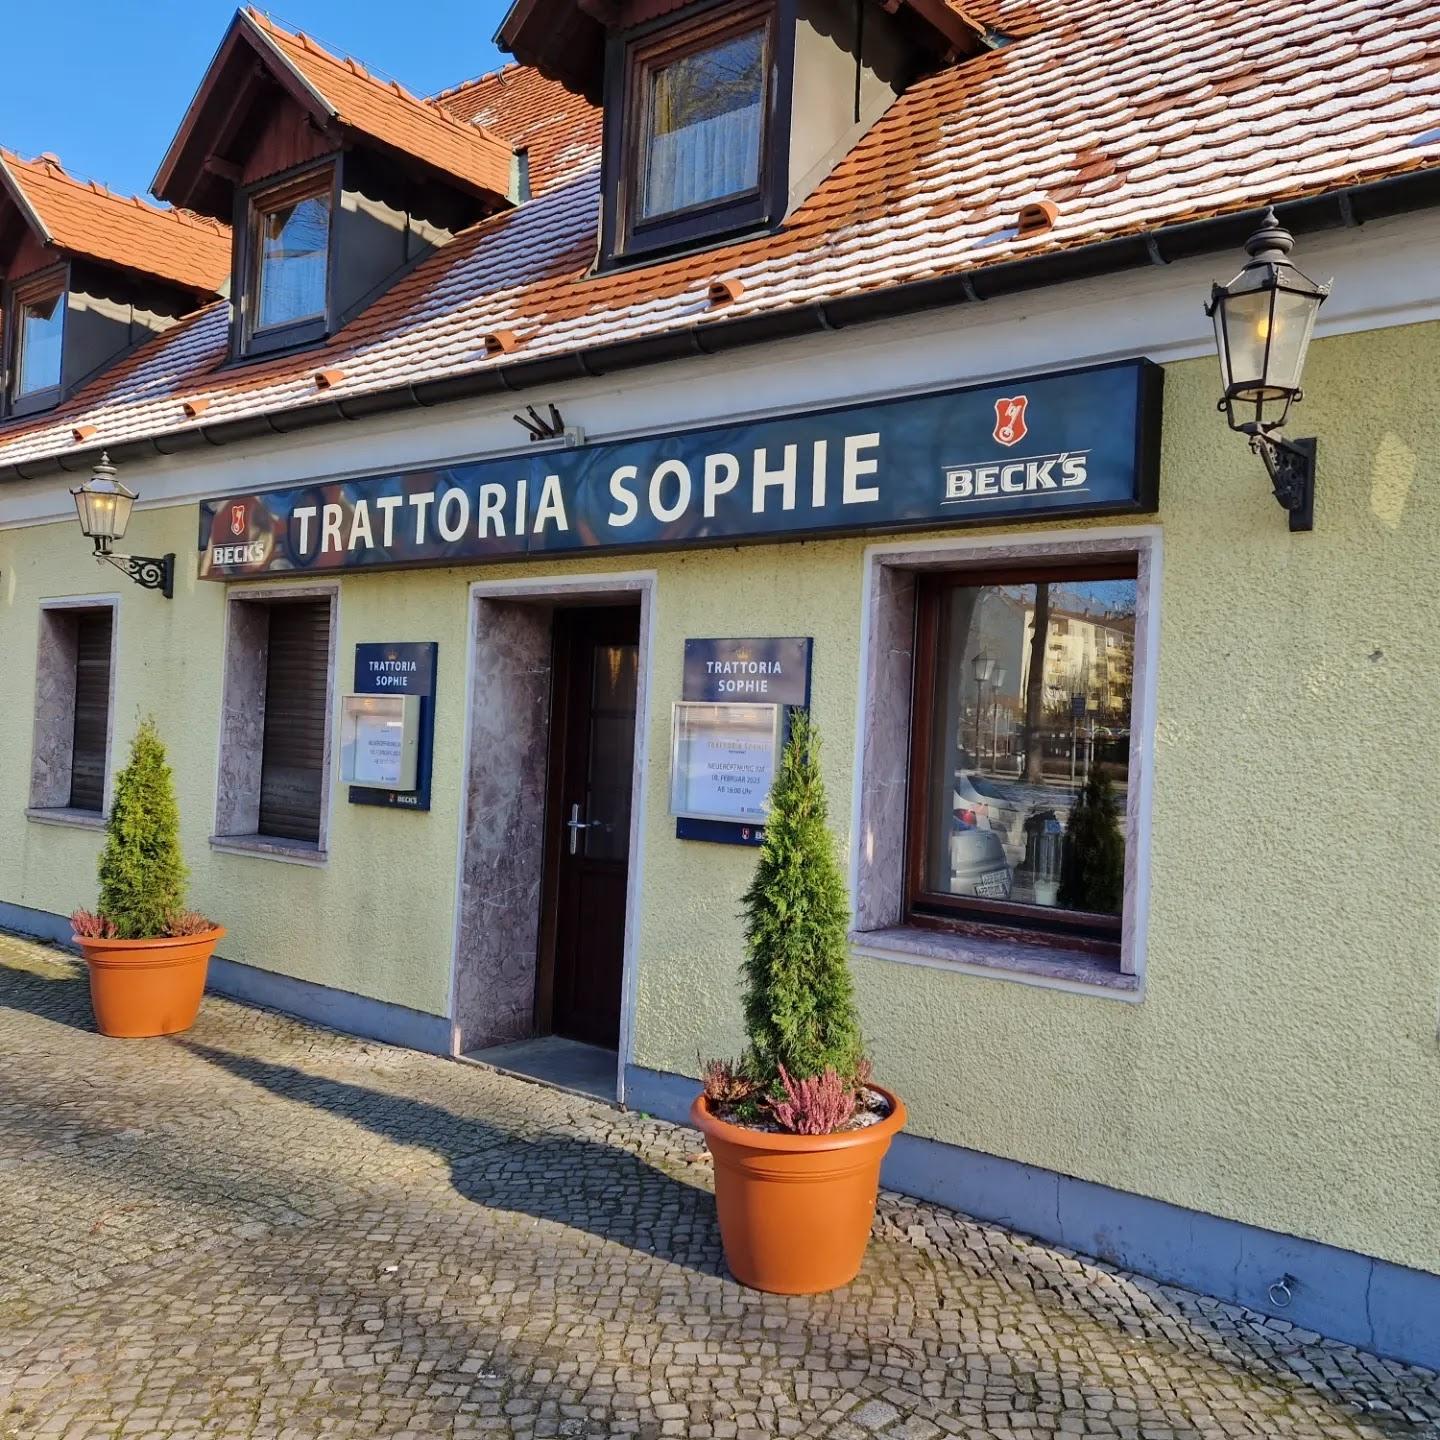 Restaurant "Trattoria Sophie" in Königs Wusterhausen